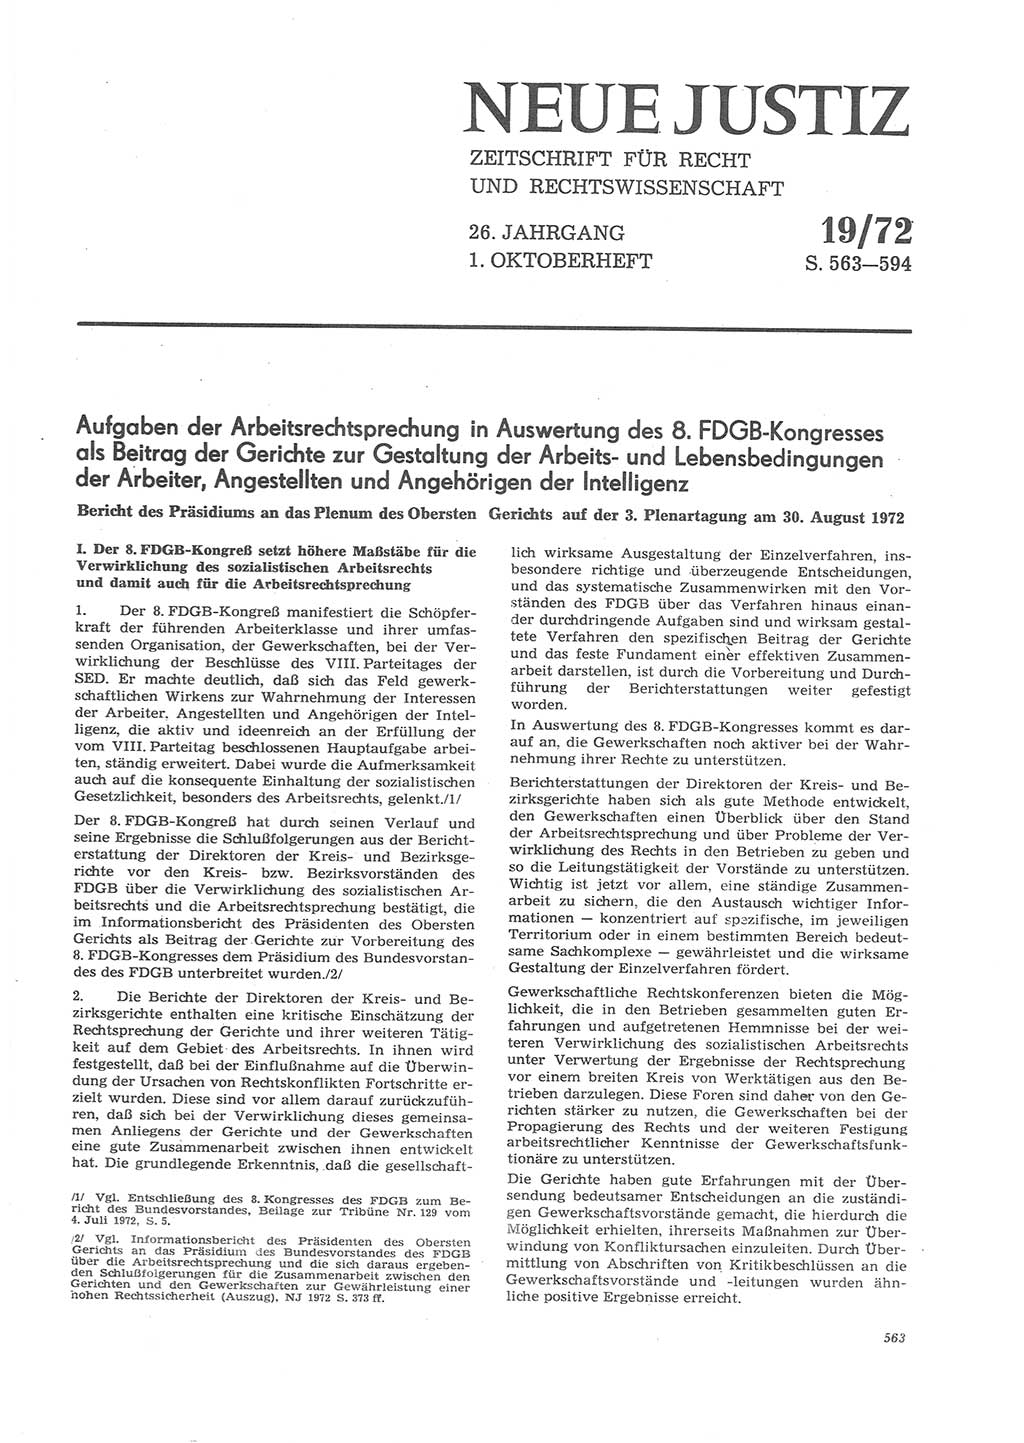 Neue Justiz (NJ), Zeitschrift für Recht und Rechtswissenschaft [Deutsche Demokratische Republik (DDR)], 26. Jahrgang 1972, Seite 563 (NJ DDR 1972, S. 563)